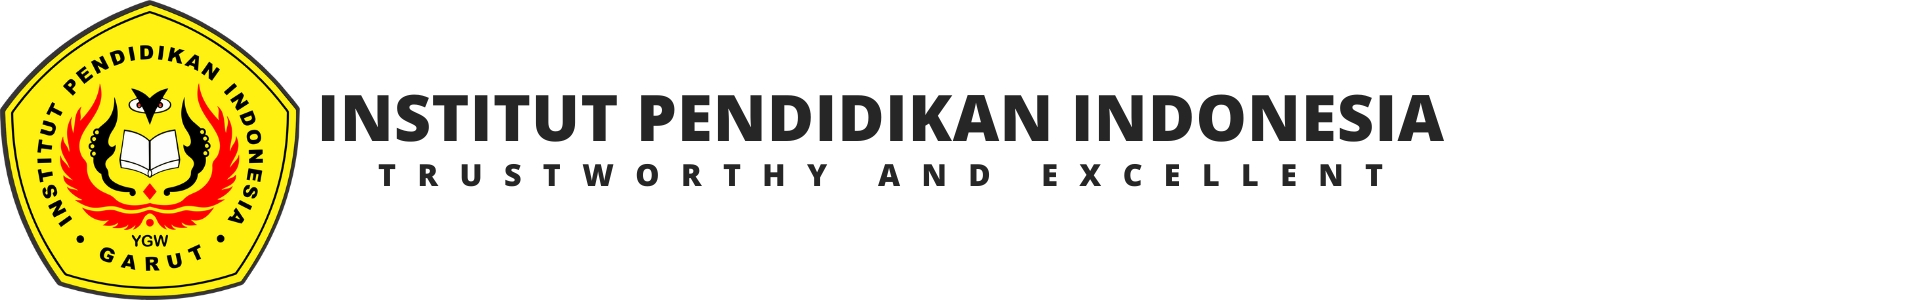 Institut Pendidikan Indonesia